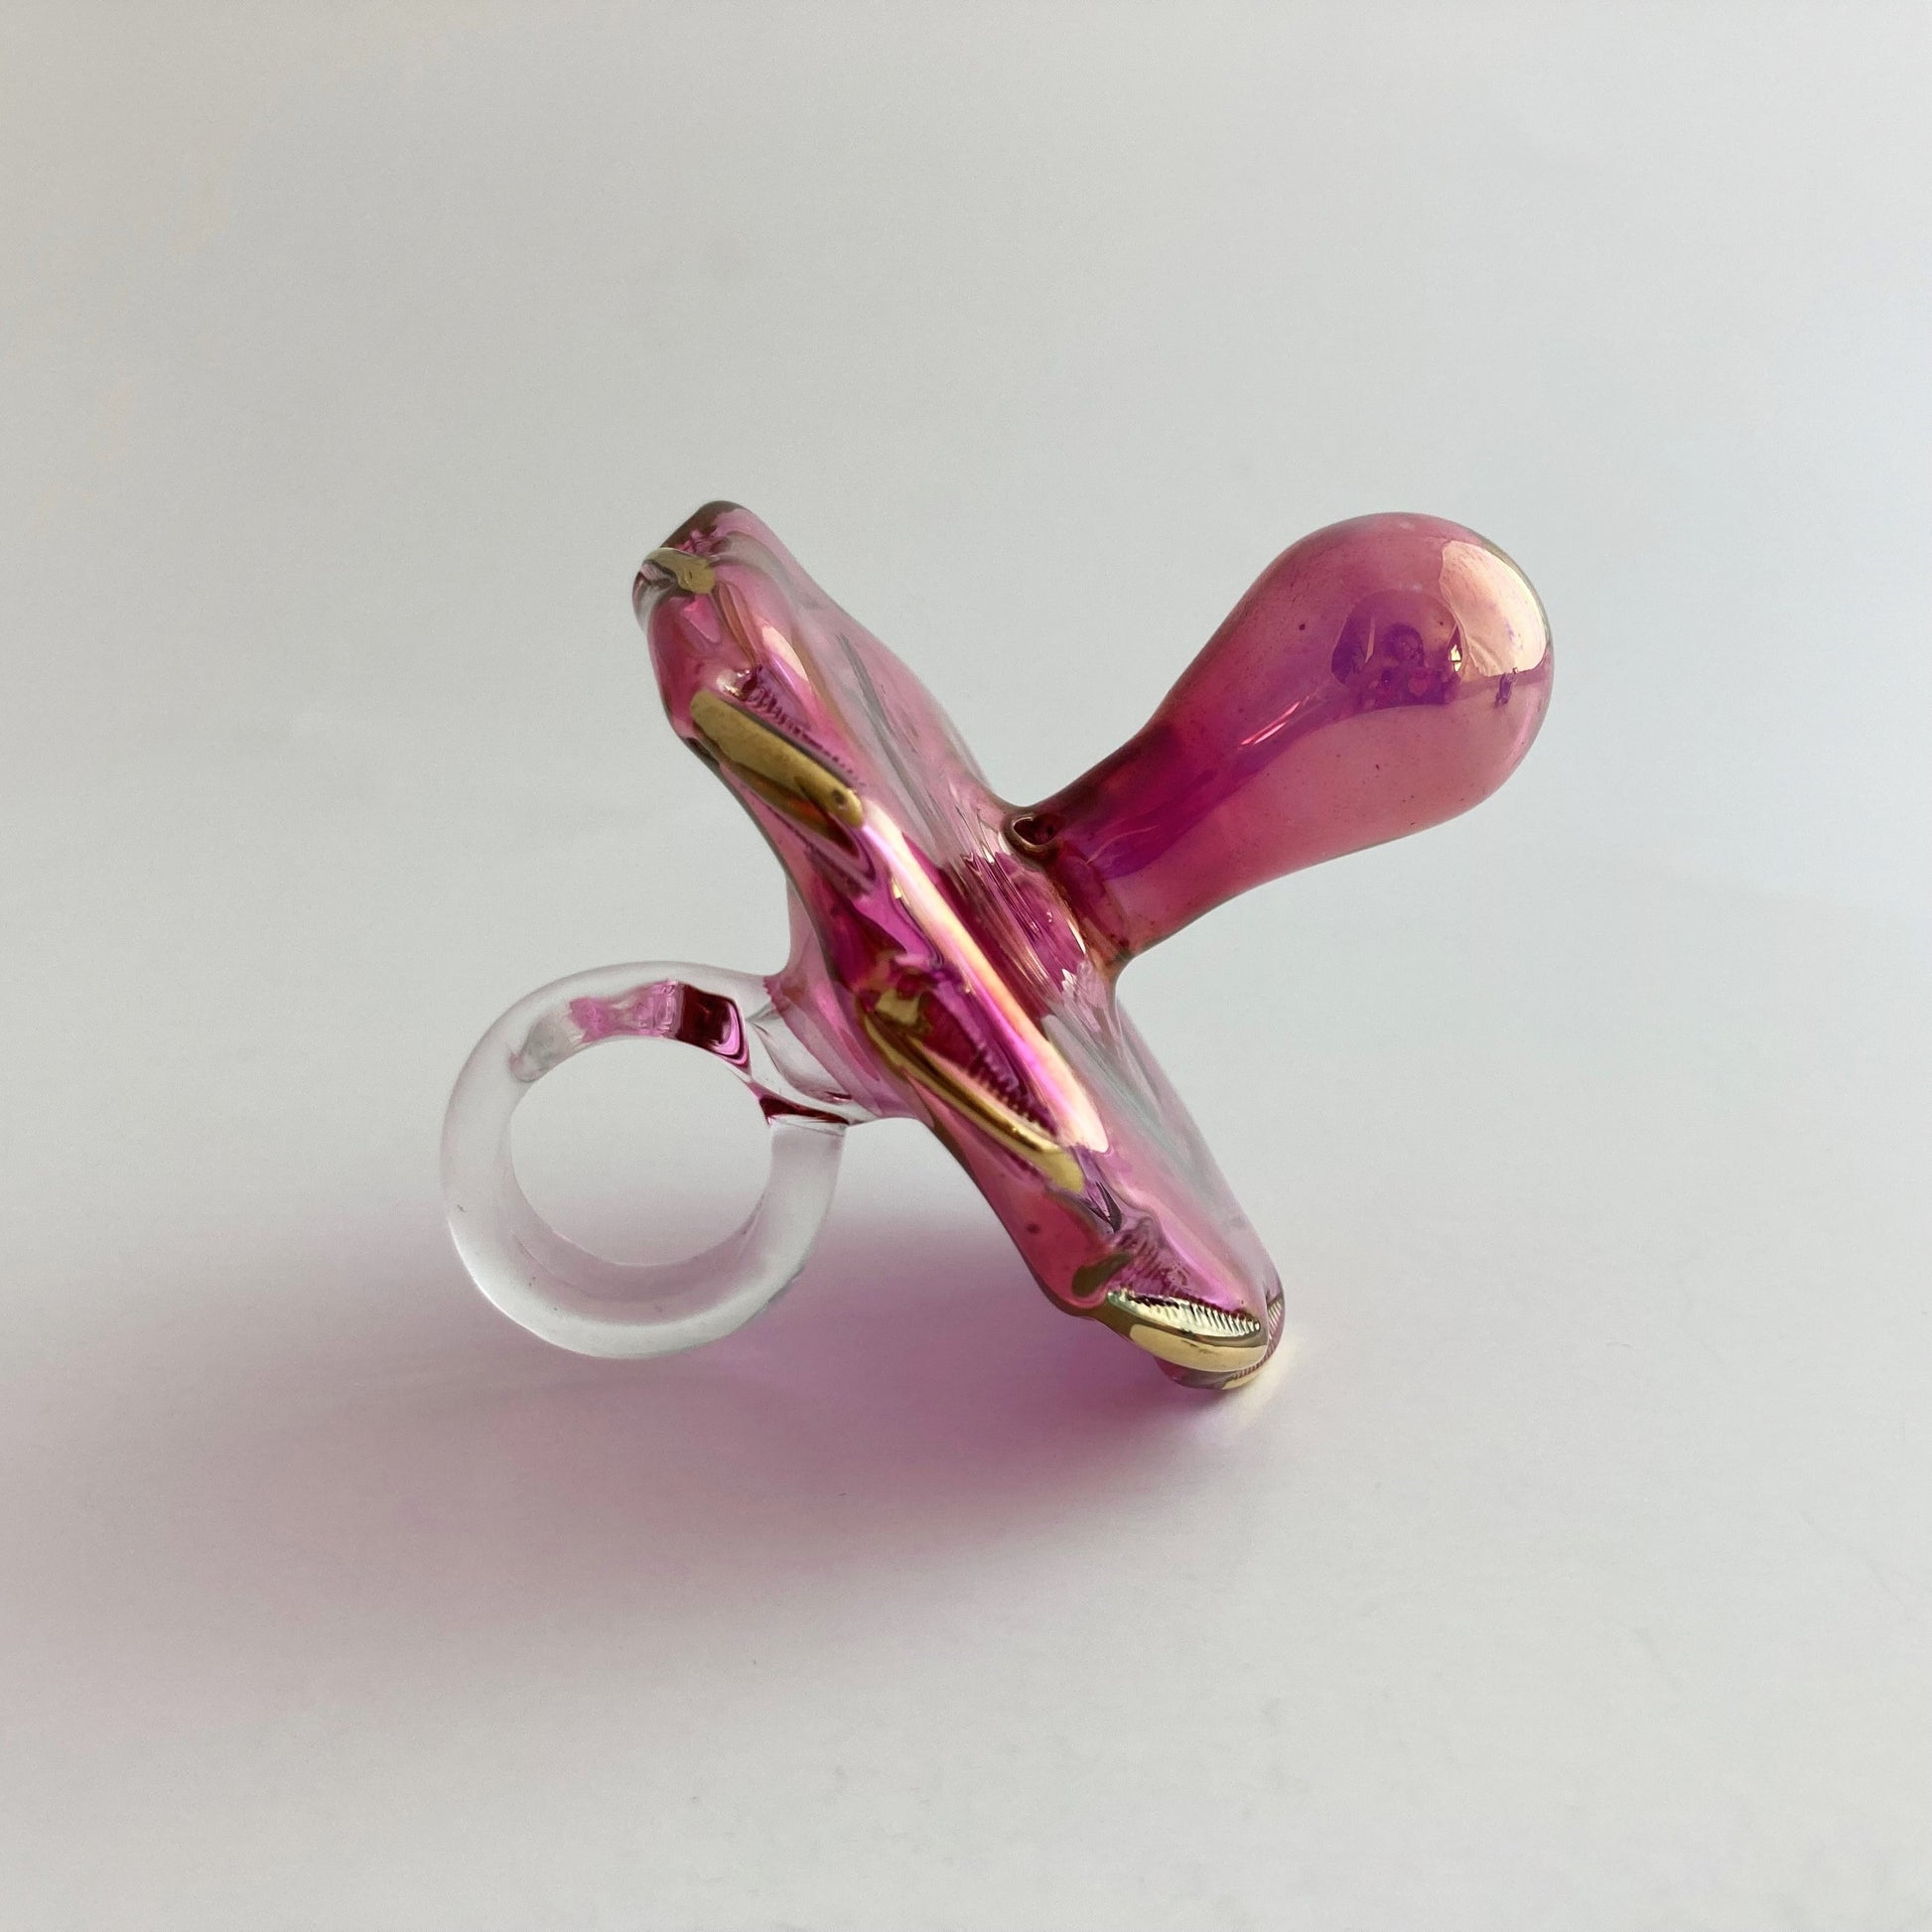 Fair Trade Blown Glass Ornament - Pacifier: Pink